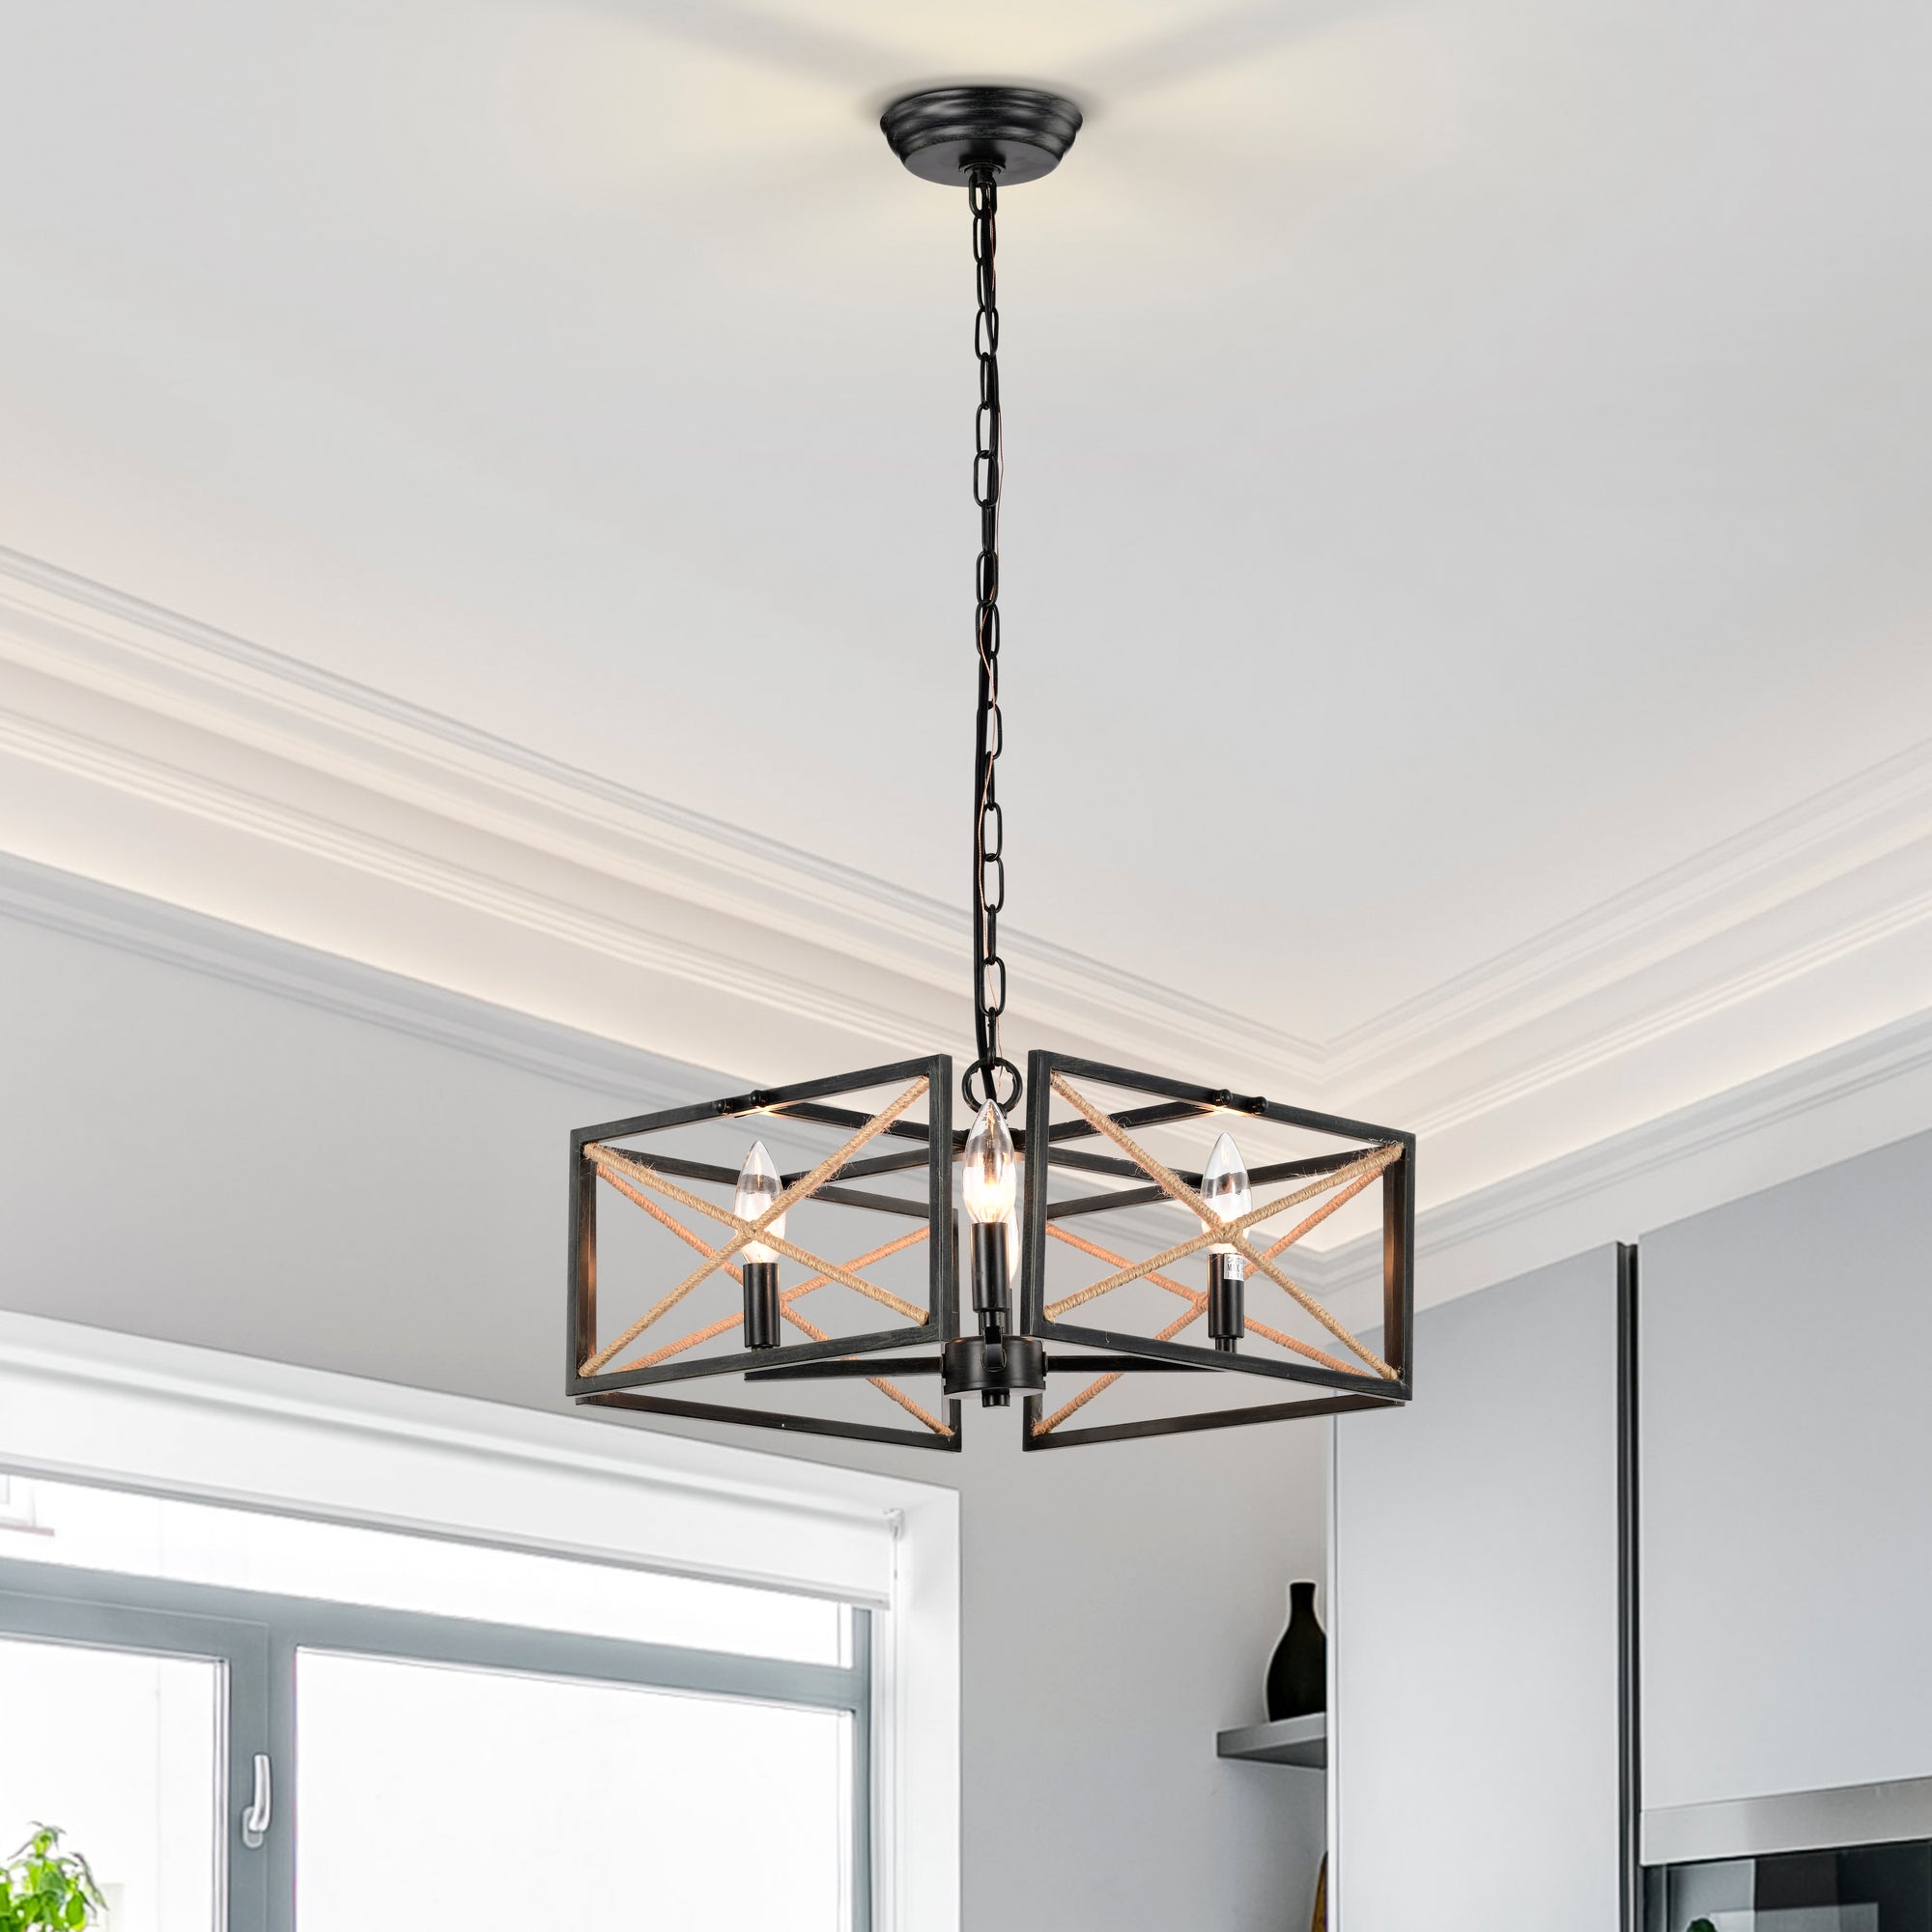 Akela 4-Light Geometric Lantern Style Chandelier for Dining/Living Room, Bedroom